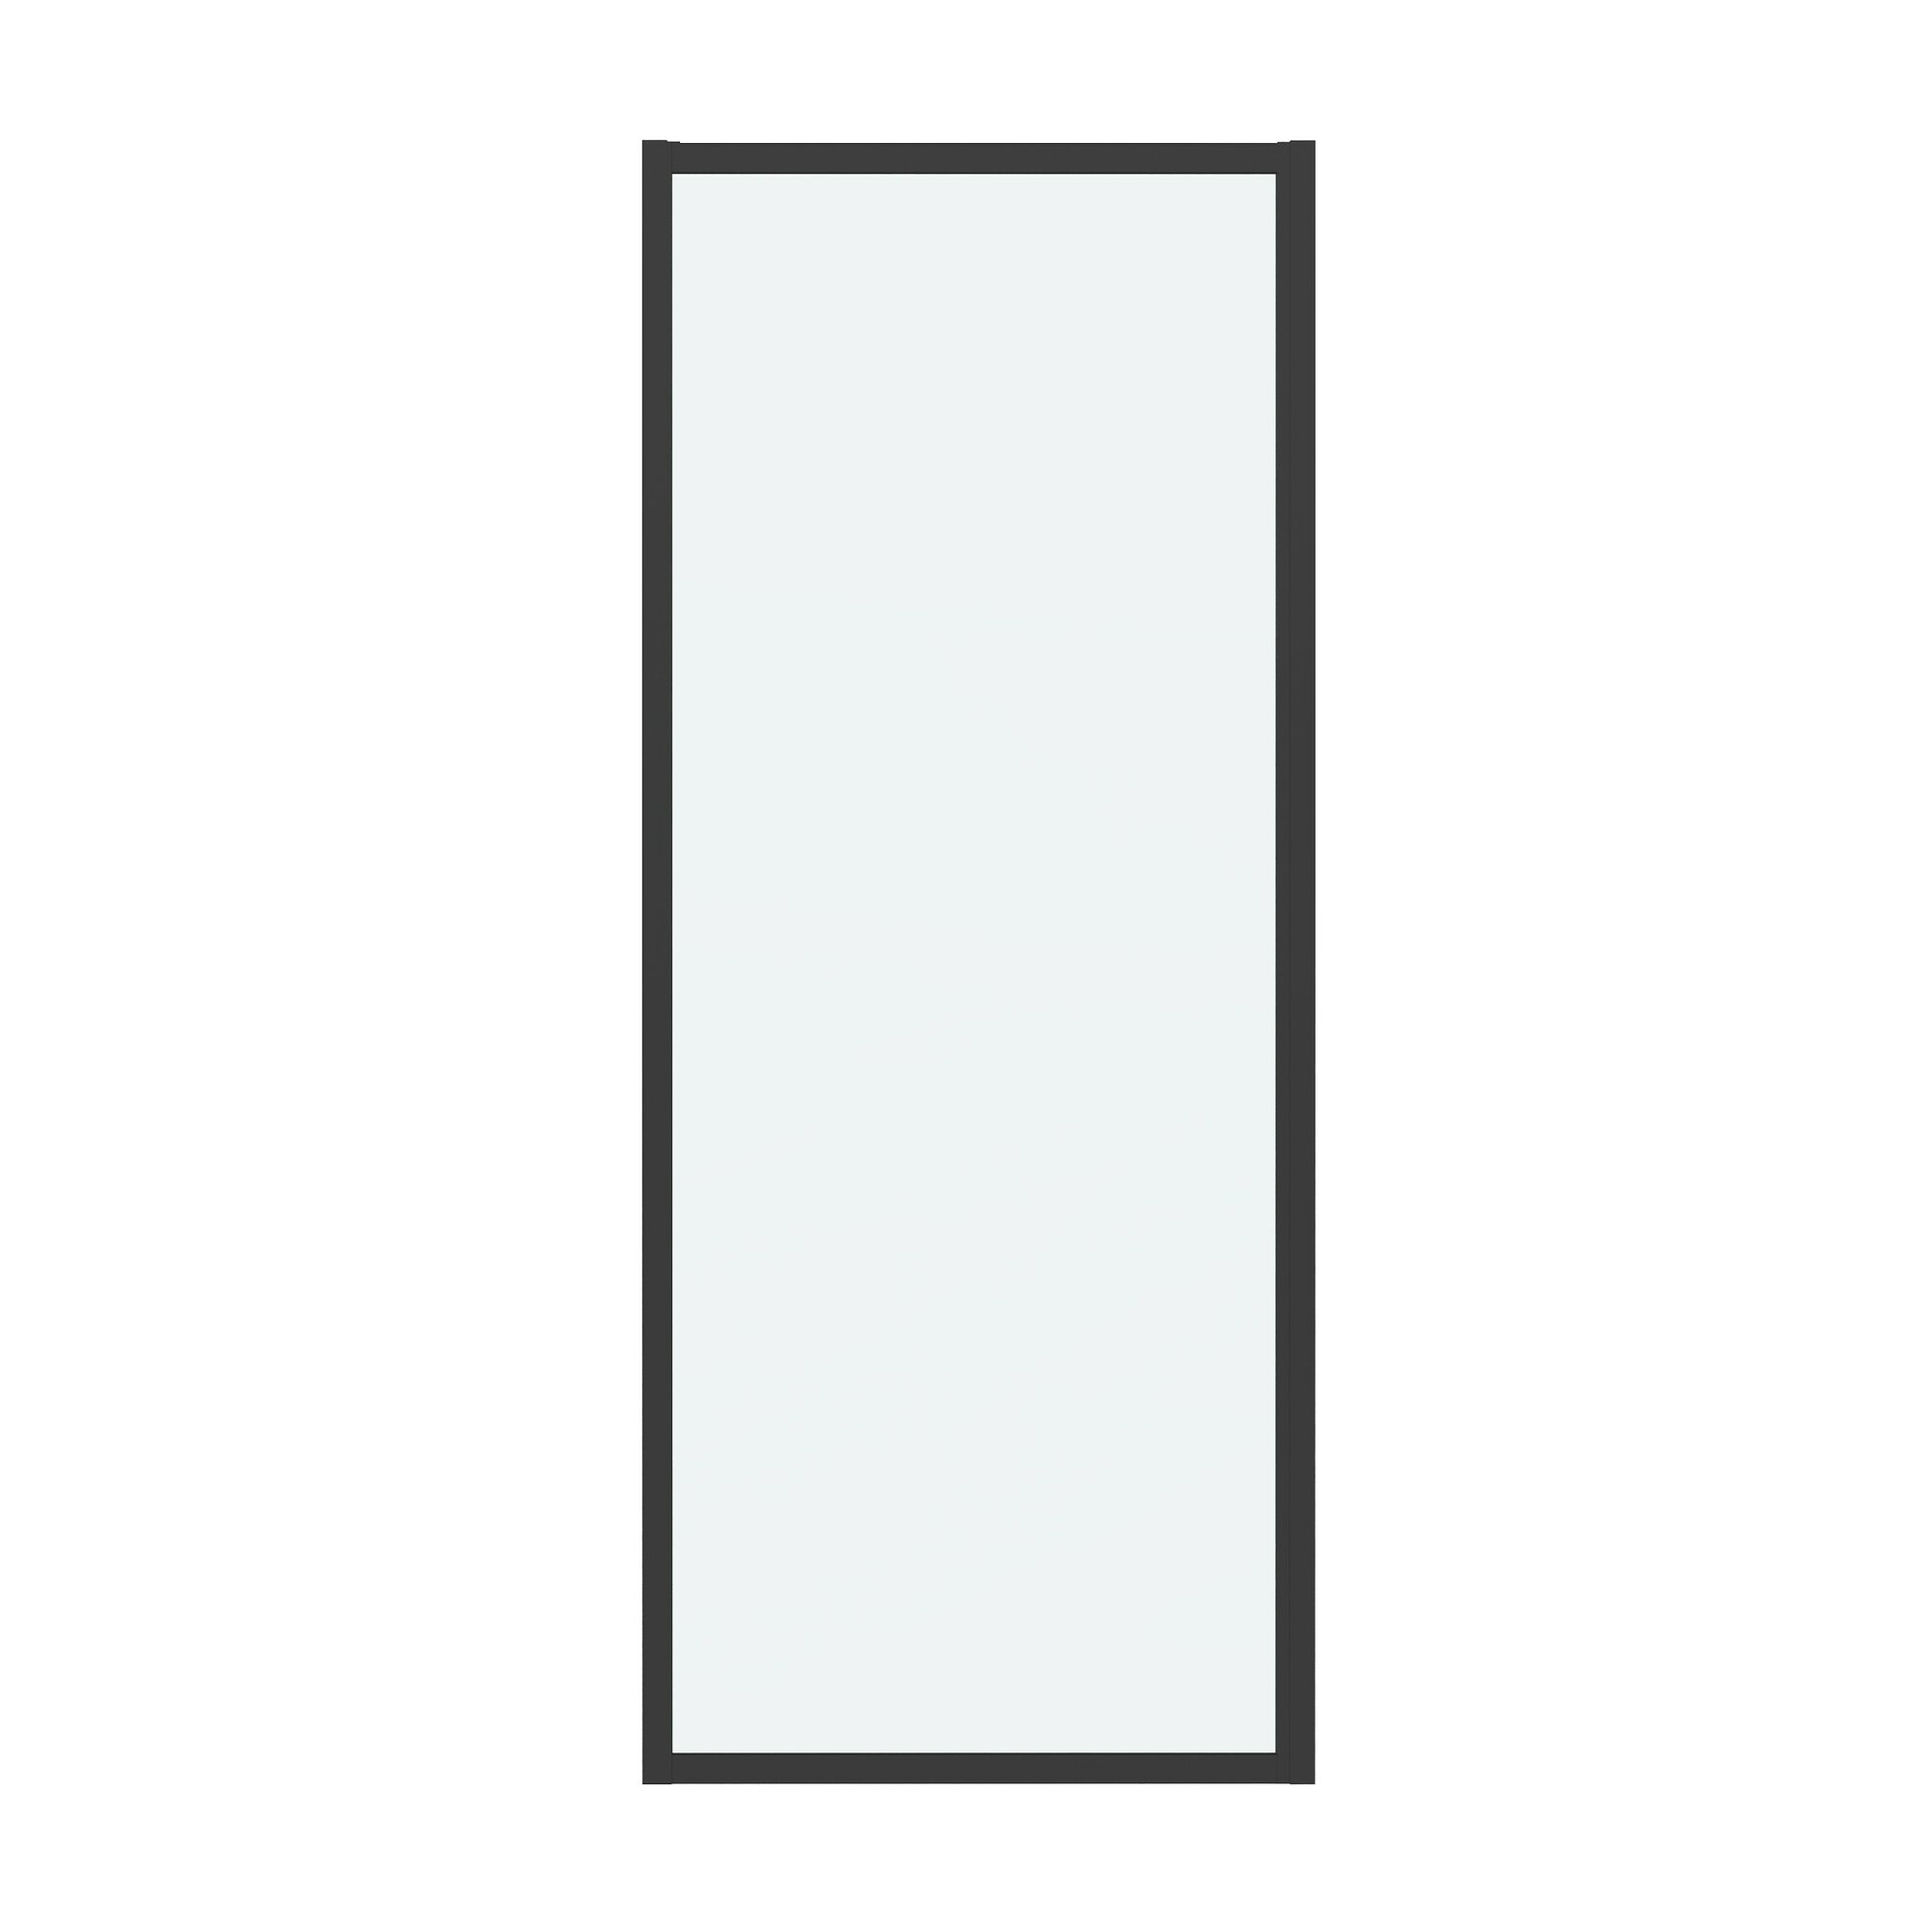 Боковая стенка Grossman Cosmo 70x195 200. K33.02.70.21.00 стекло прозрачное, профиль черный матовый